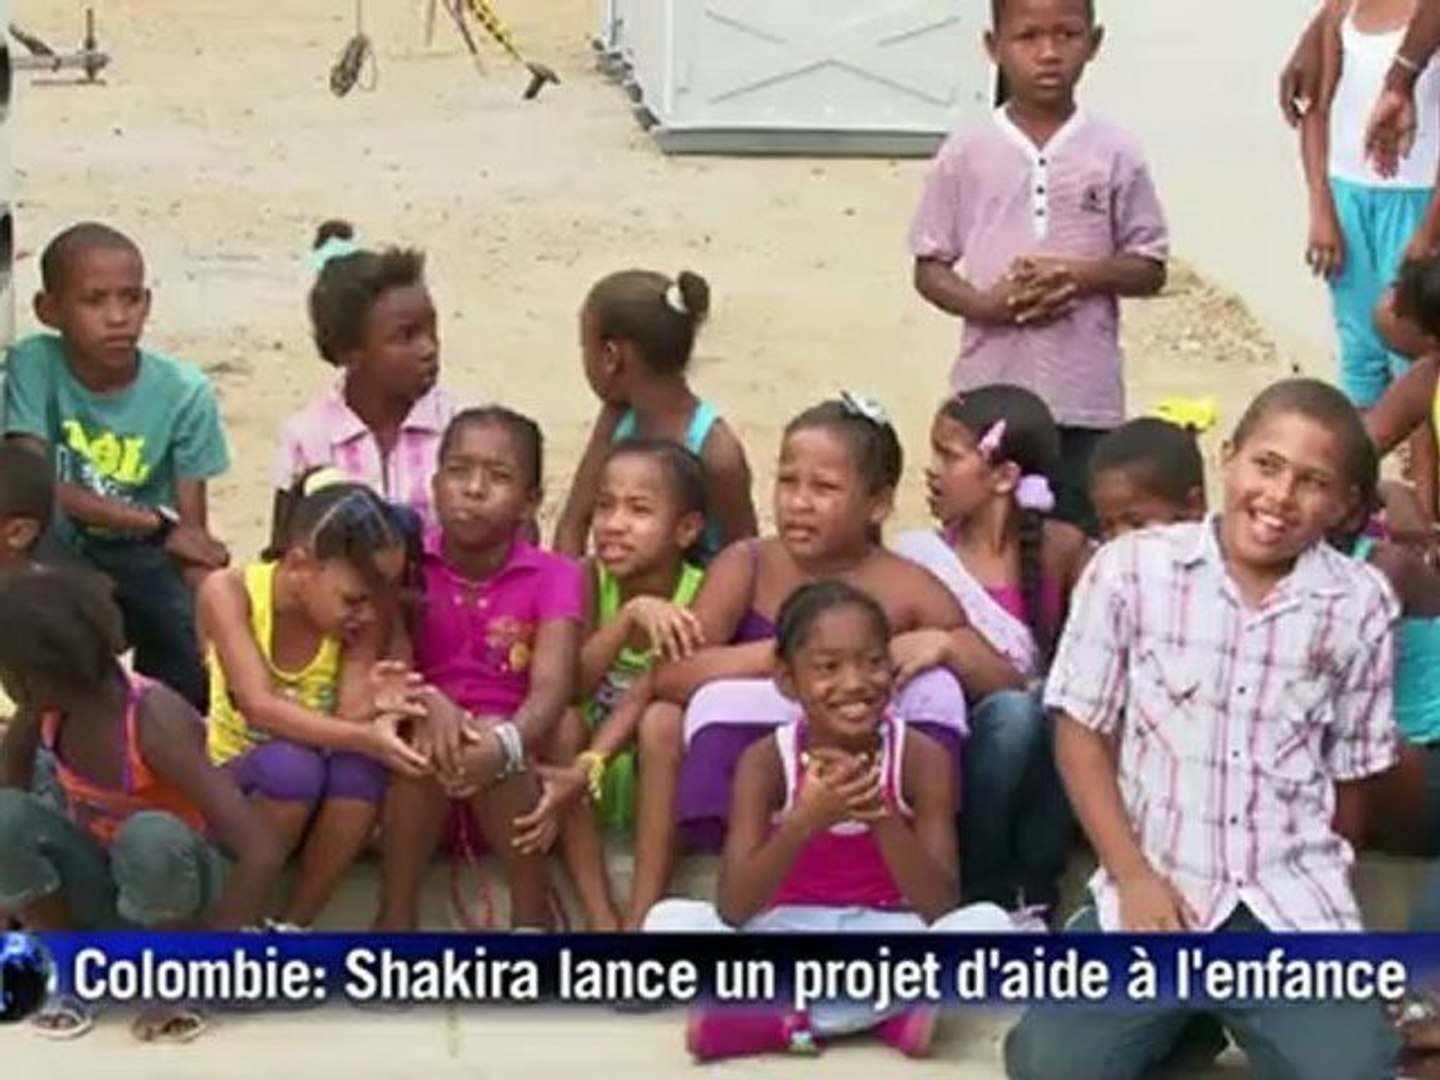 Colombie: Shakira lance un projet en faveur de l'enfance - Vidéo Dailymotion